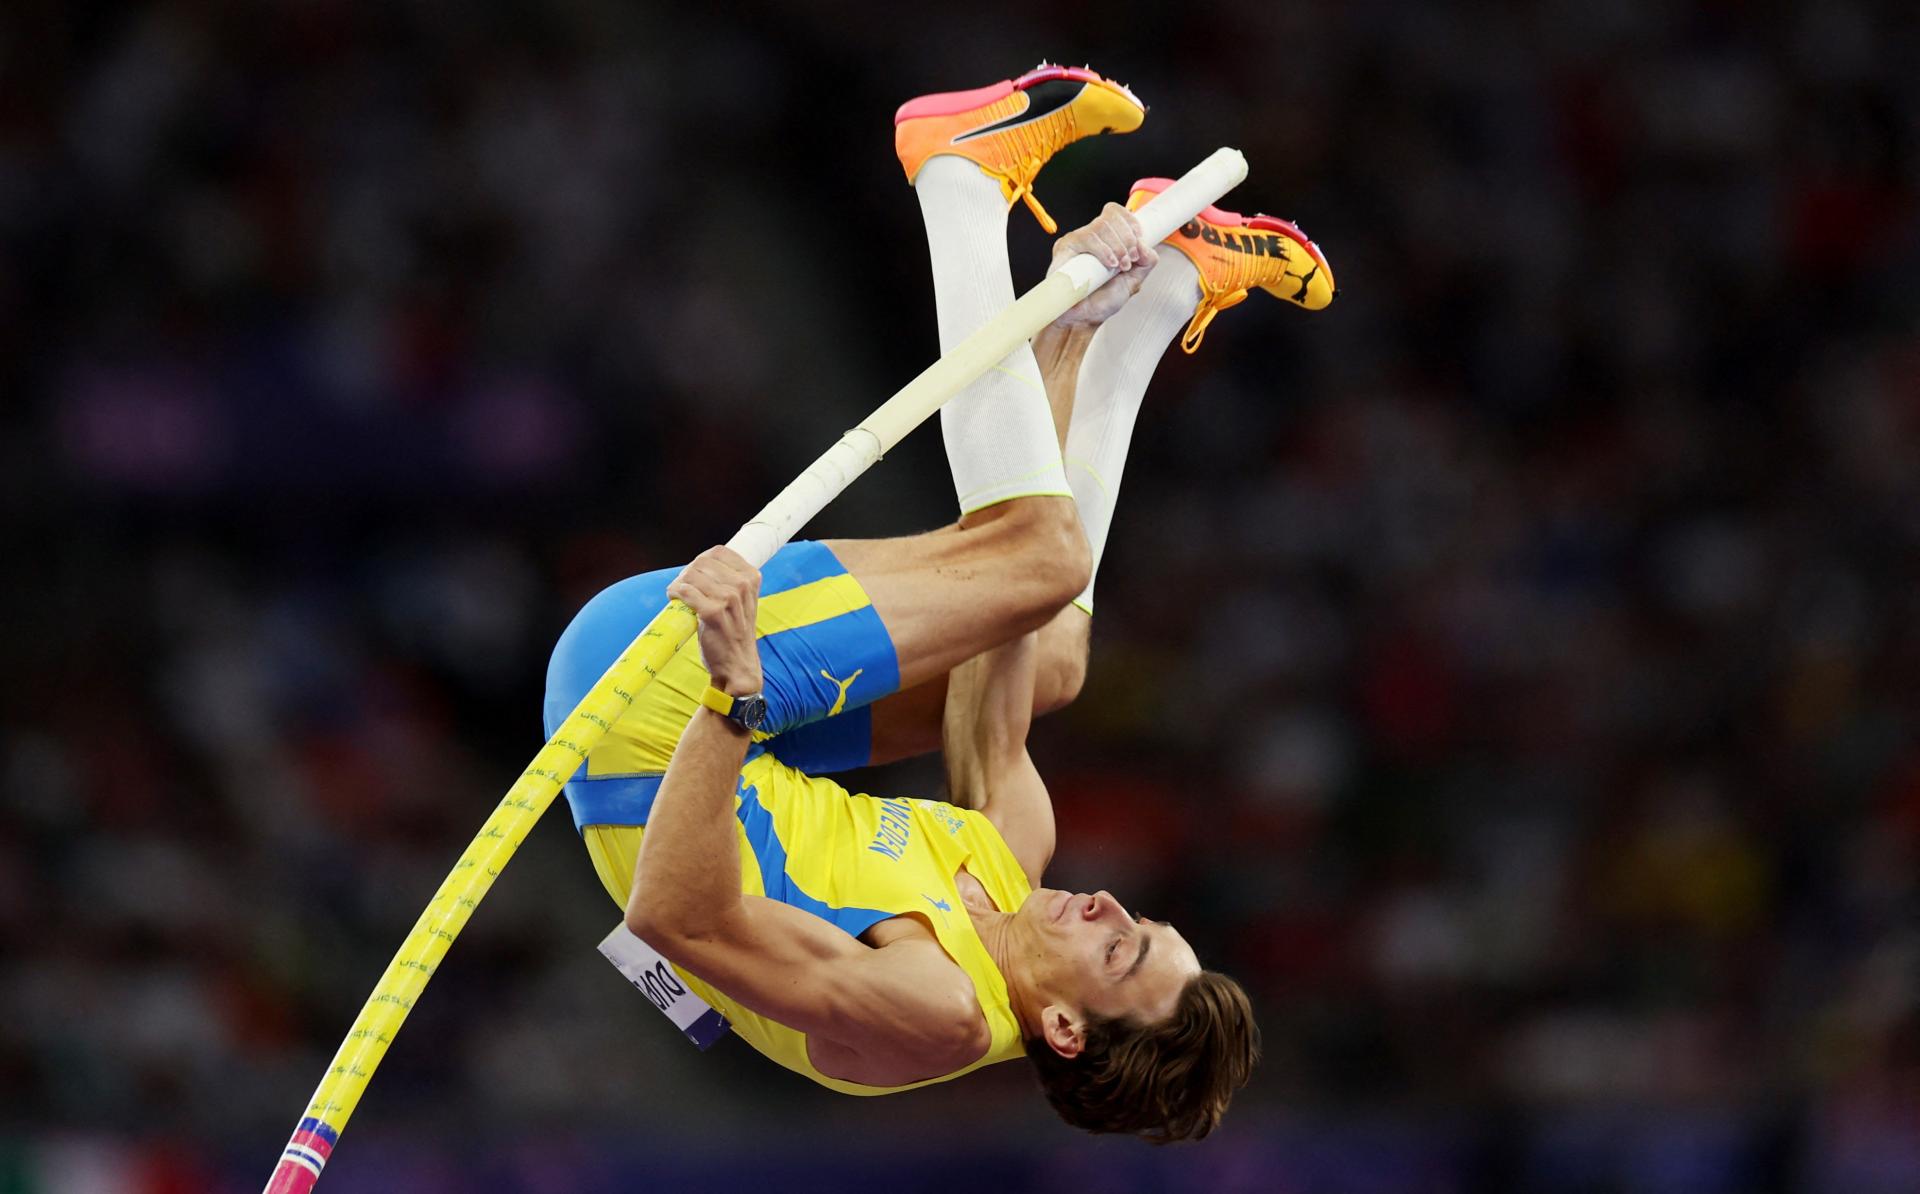 Švédsky žrdkár Duplantis prekonal svetový rekord a obhájil zlato